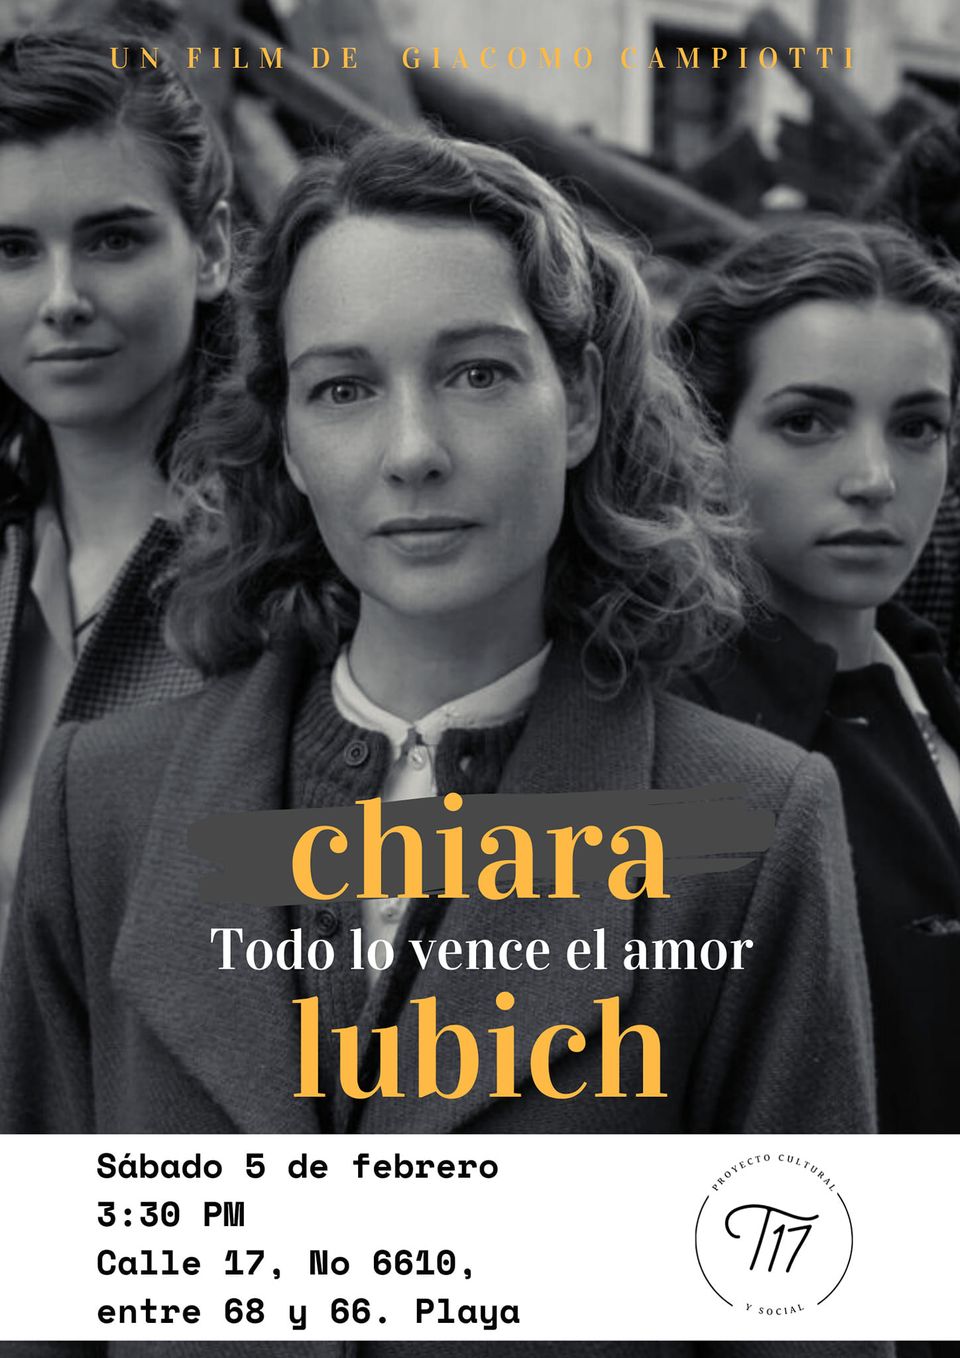 Imagen Proyección del film: Chiara Lubich, Todo lo vence el Amor. Un film italiano, de Giacomo Campiotti